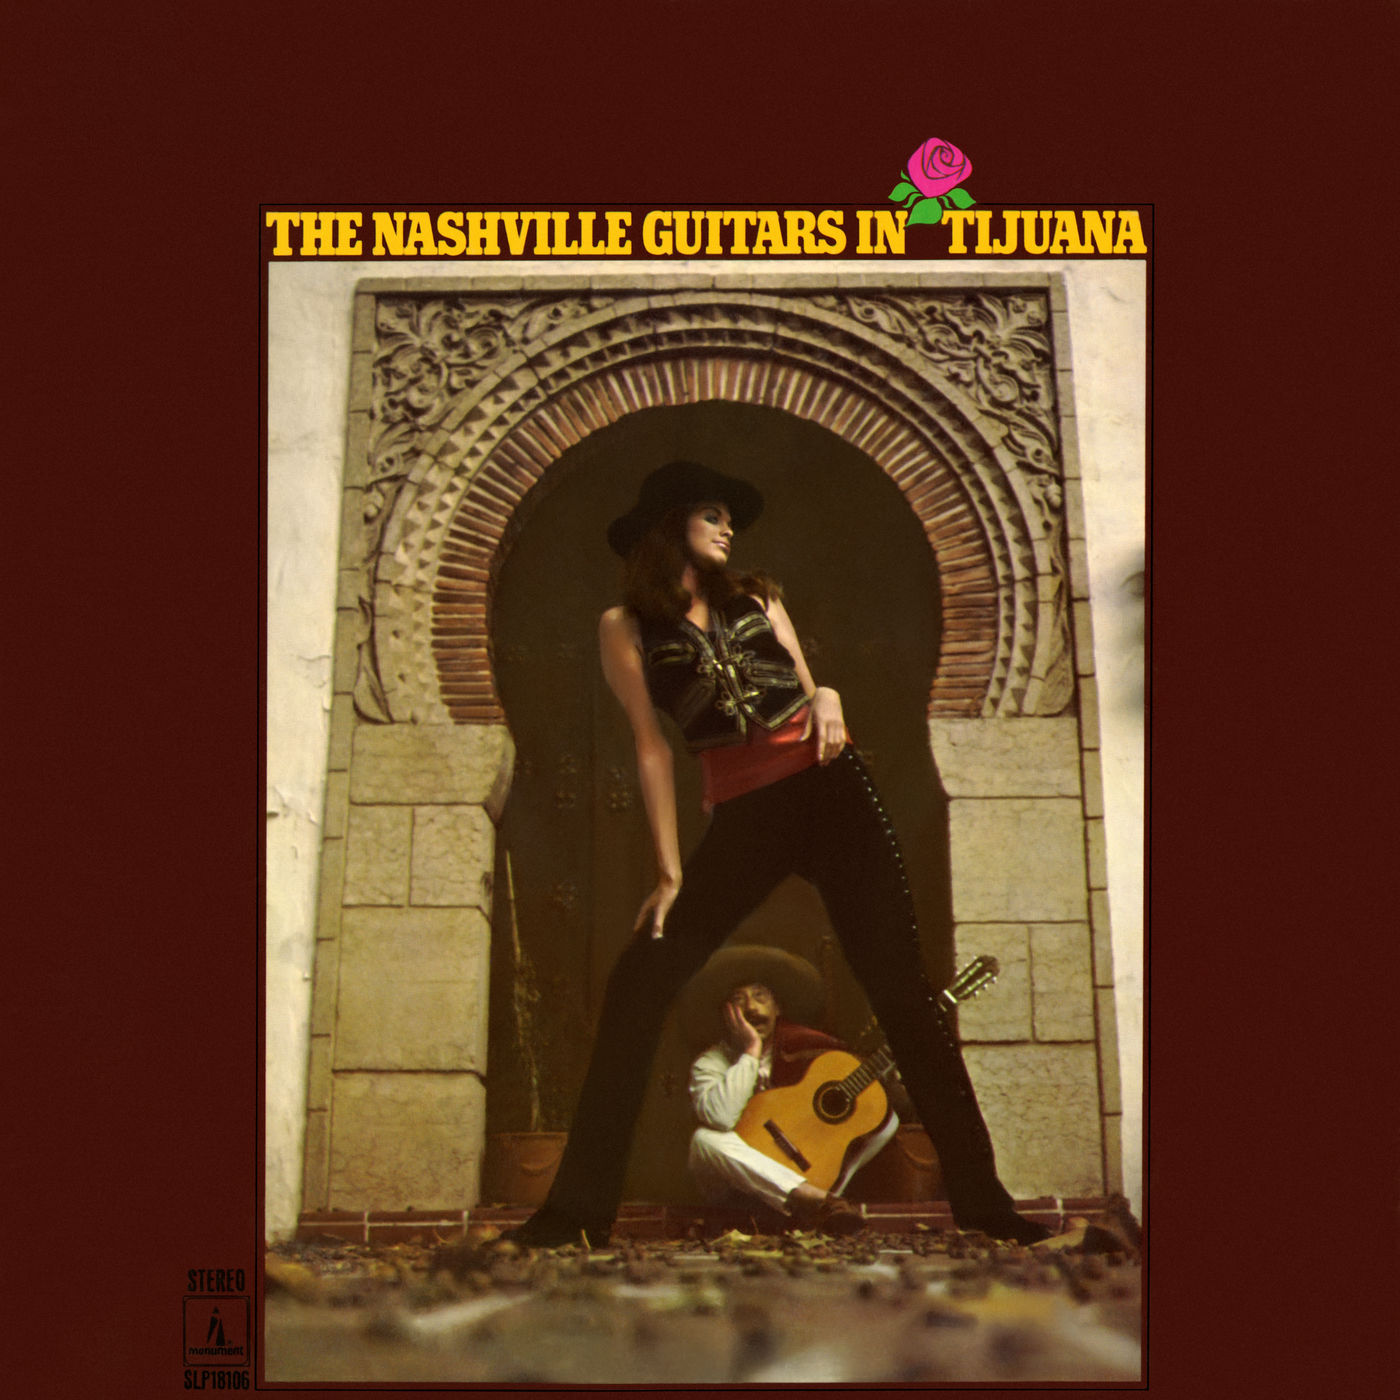 The Nashville Guitars – The Nashville Guitars In Tijuana